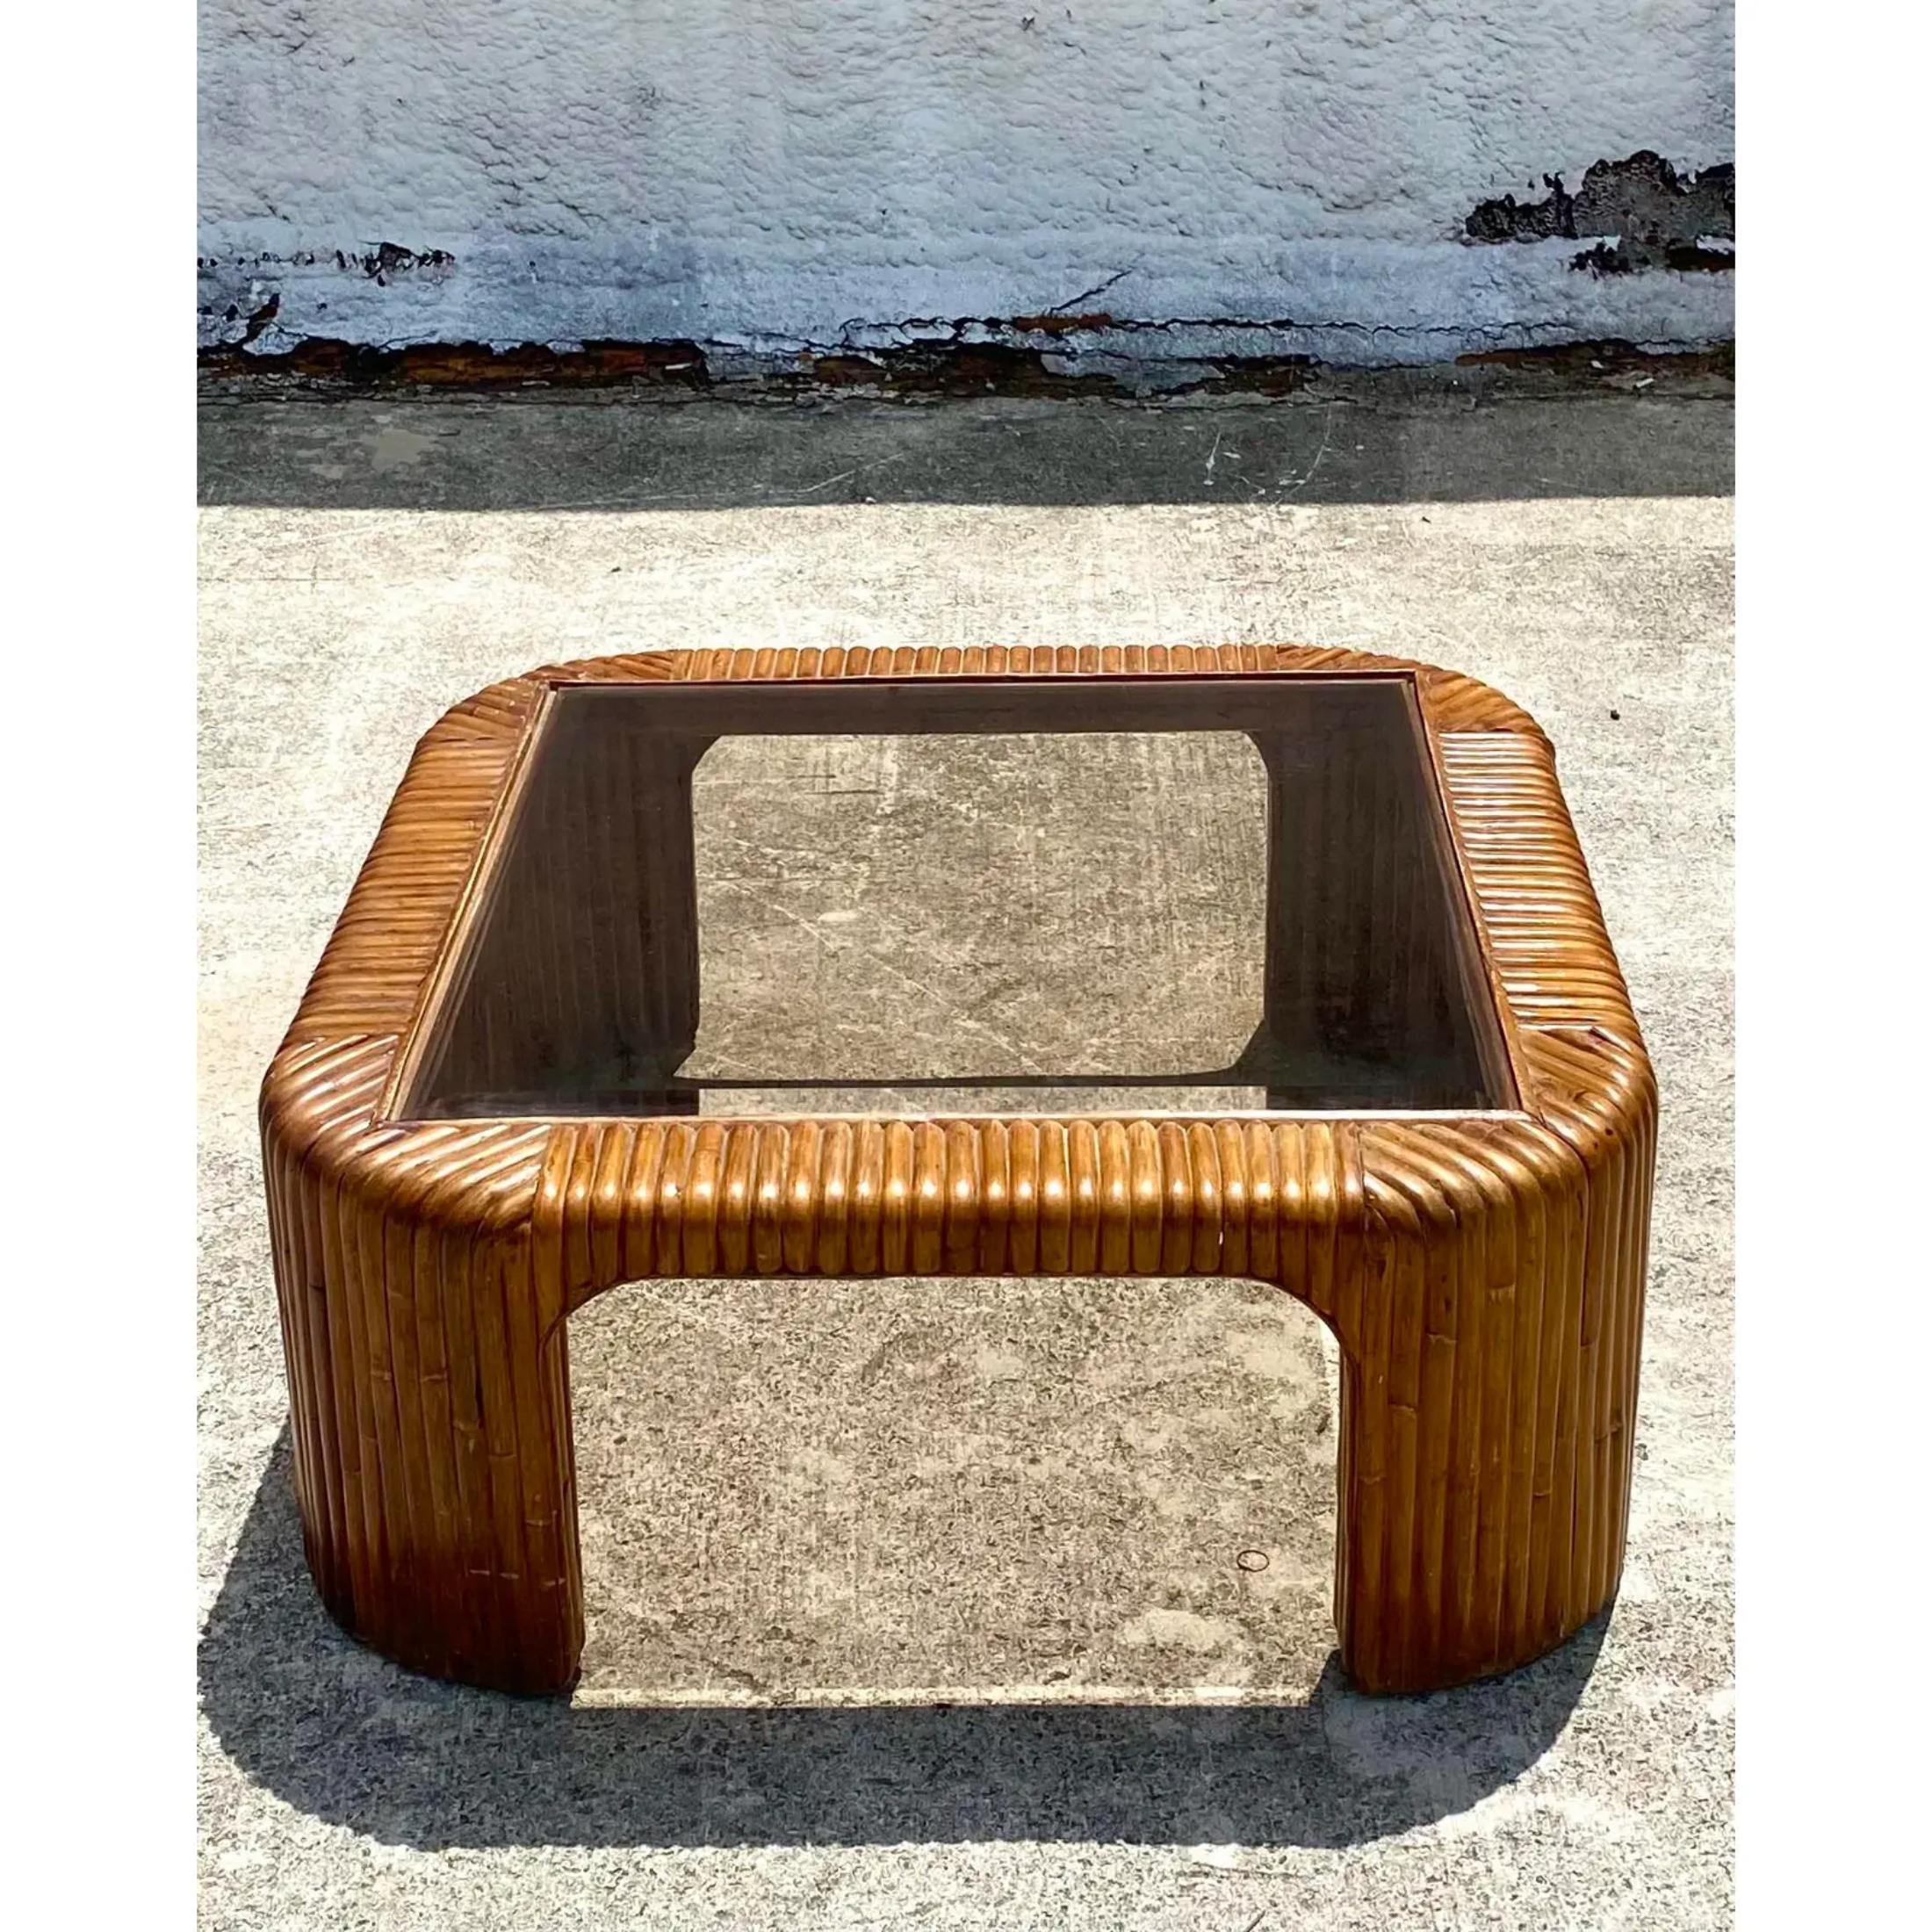 Une fabuleuse table basse côtière vintage. Magnifique rotin bretzel brun riche dans un magnifique design en cascade. Plateau en verre teinté encastré. Acquis d'une succession de Palm Beach